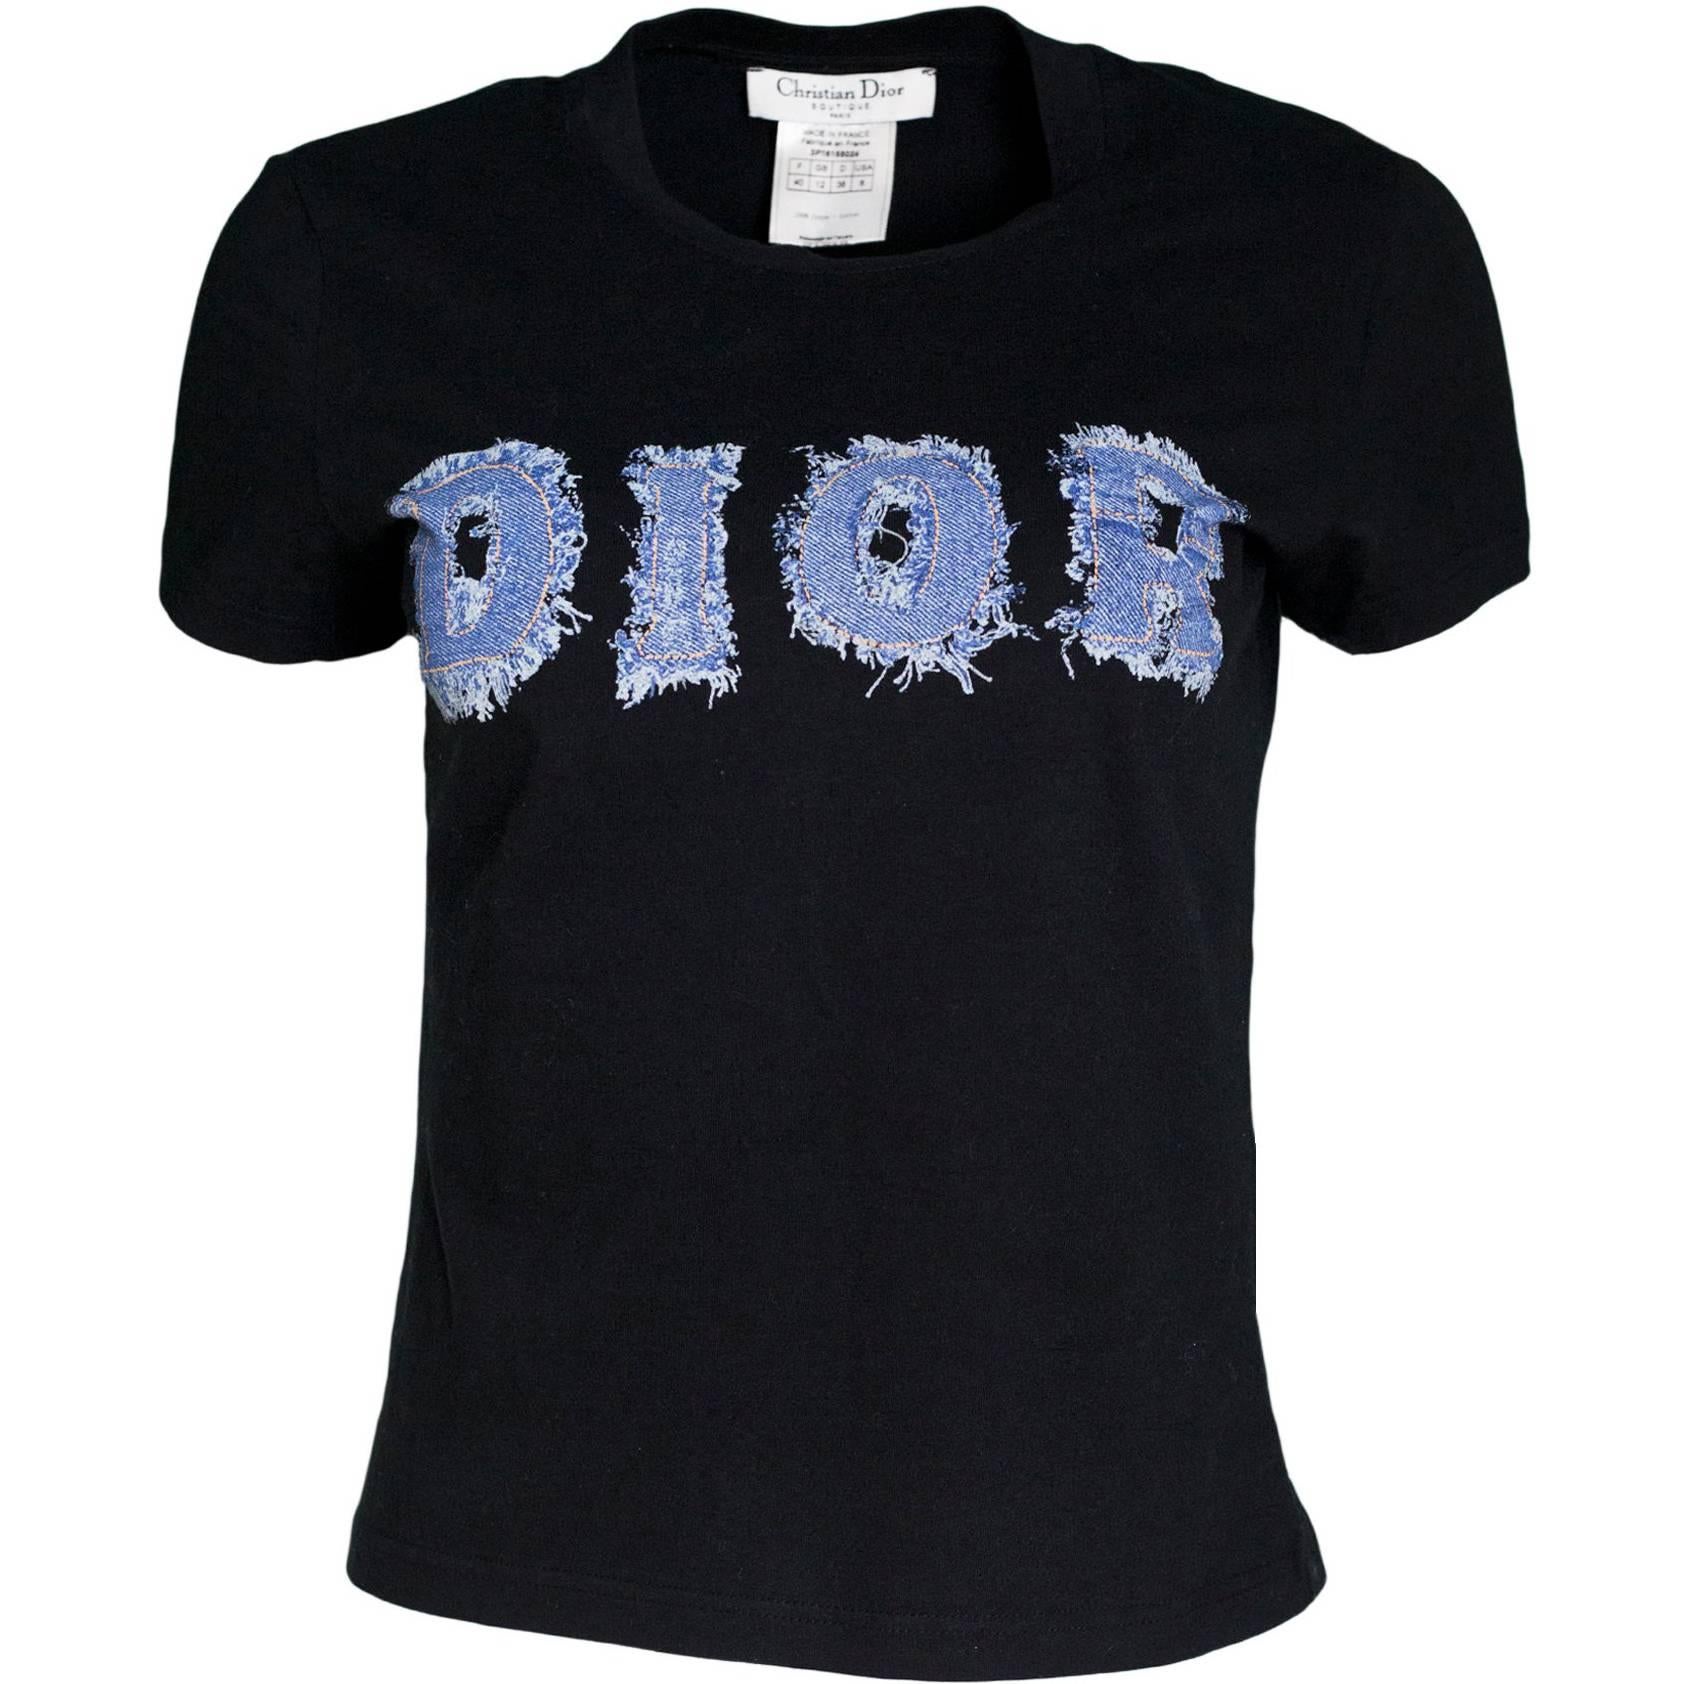 Christian Dior BOUTIQUE フランス製 Tシャツ 38 刺繍-4.の画像